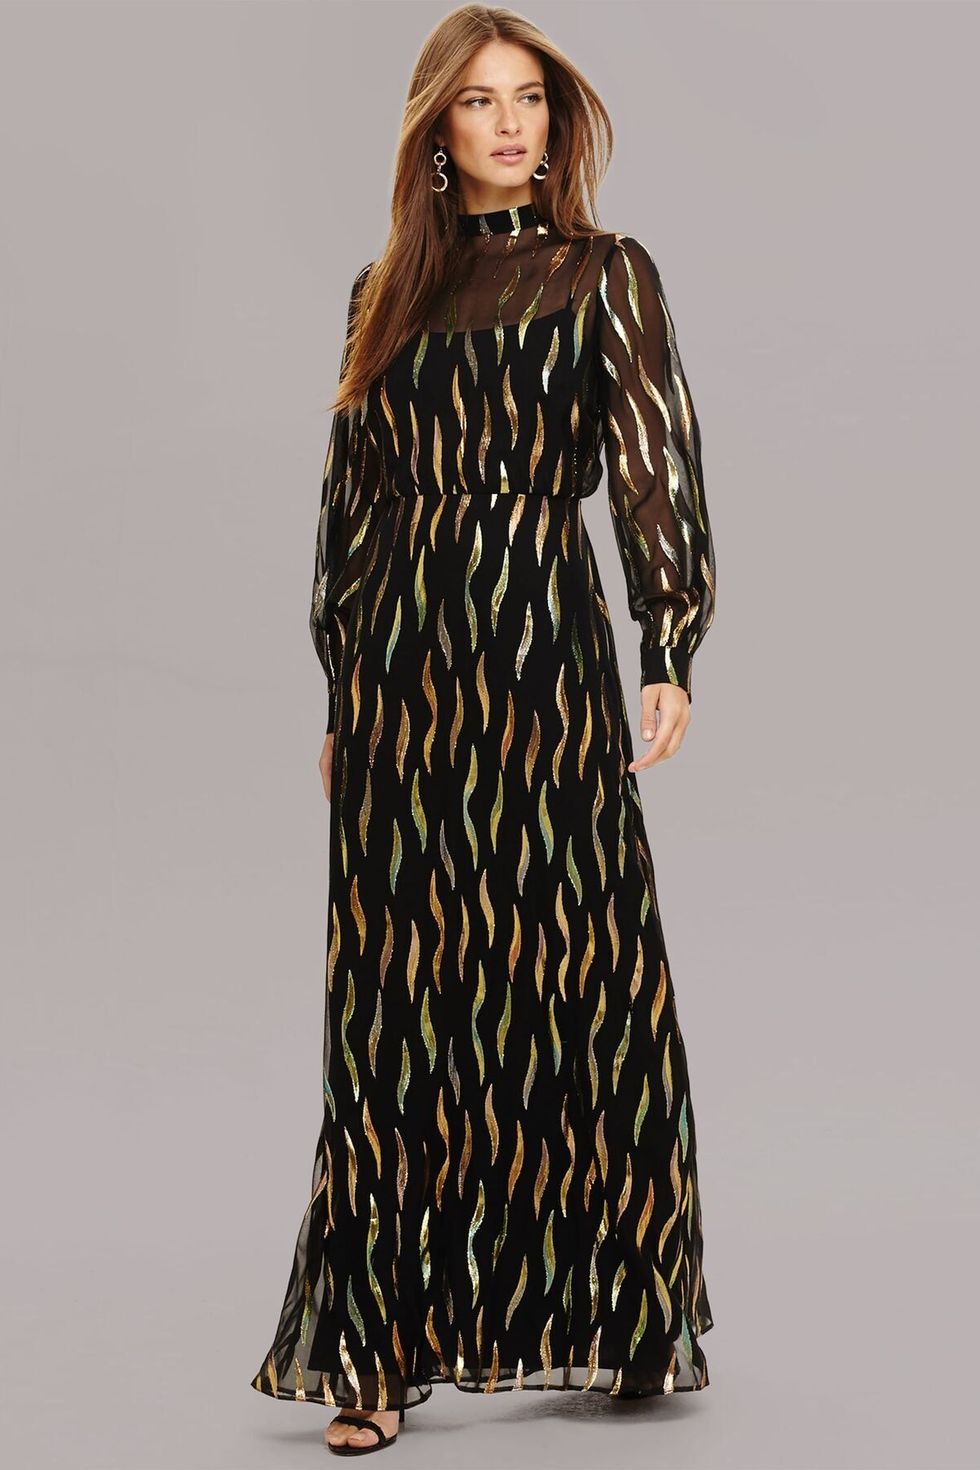 Penny Shimmer Silk Maxi Dress, £275